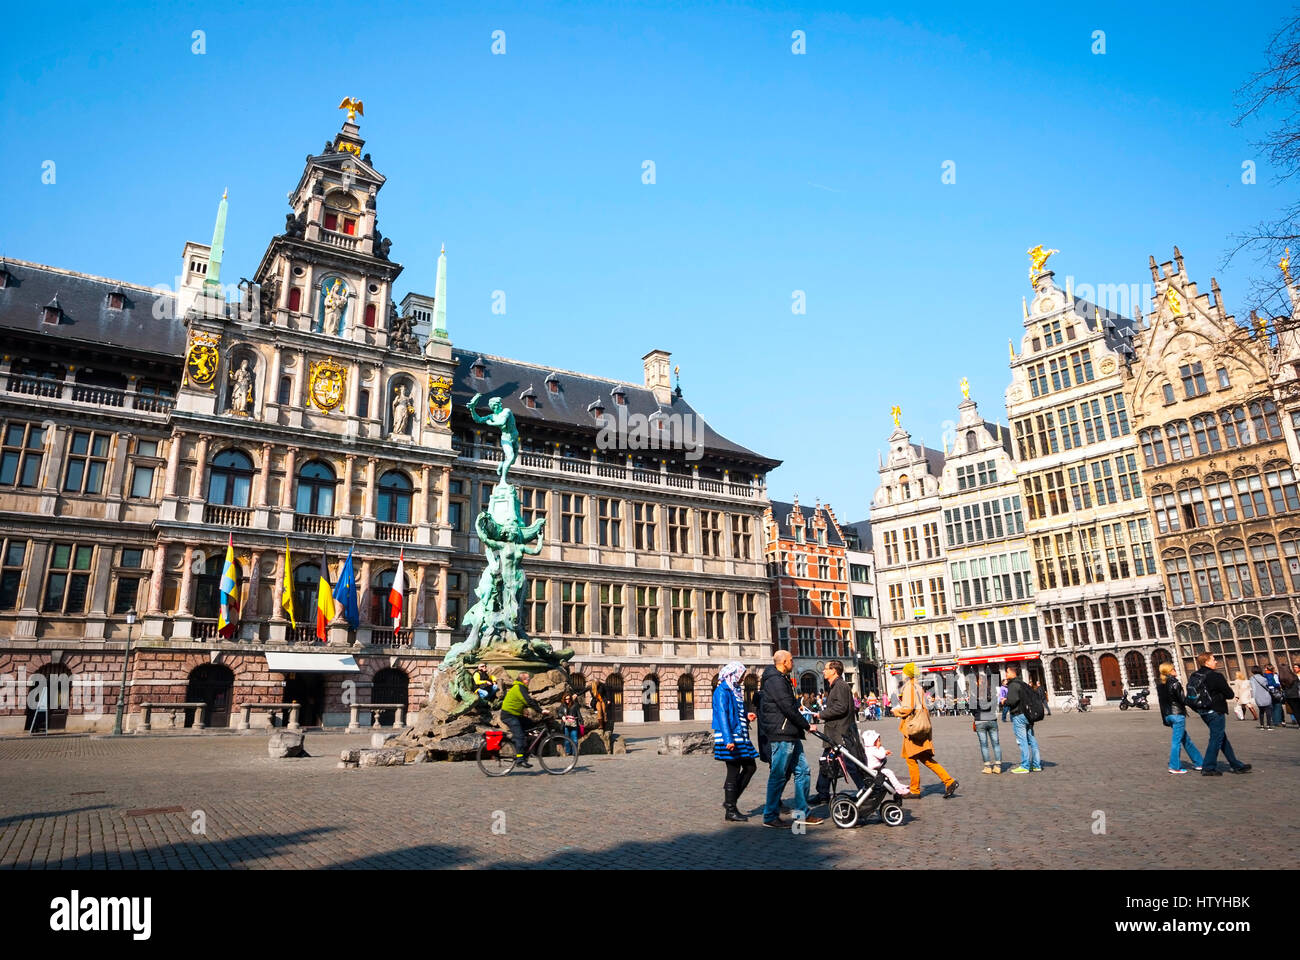 Antwerpen, Belgien - März 17: Innenstadt von Antwerpen mit typischen alten Häusern am 17. März 2015 Stockfoto